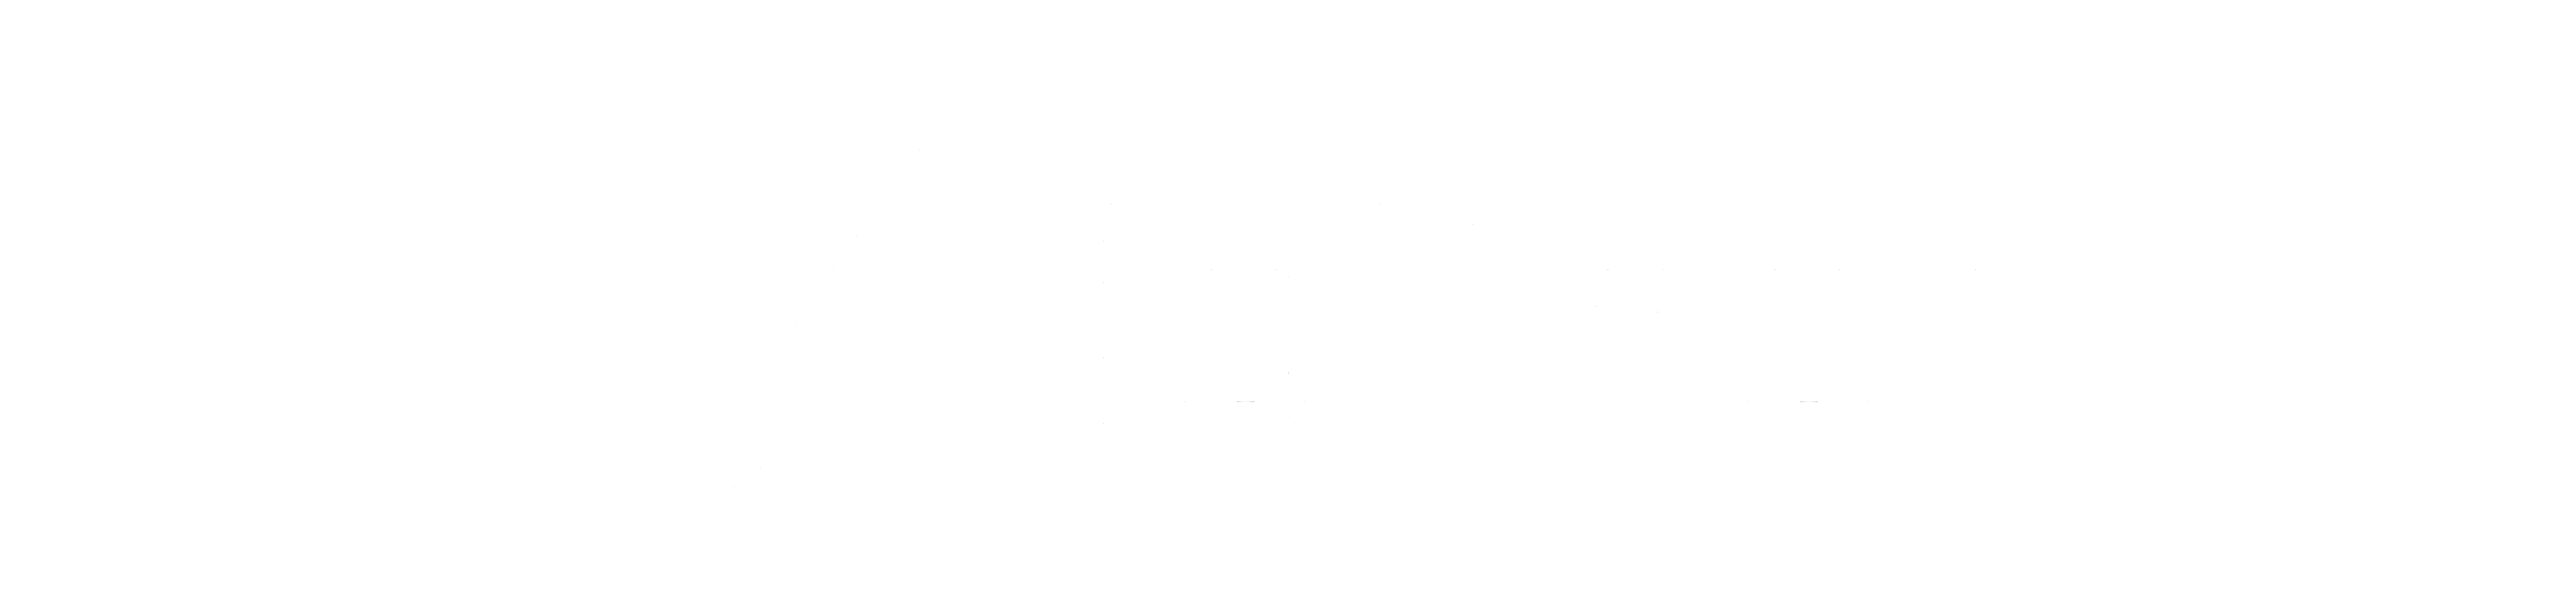 Refiner